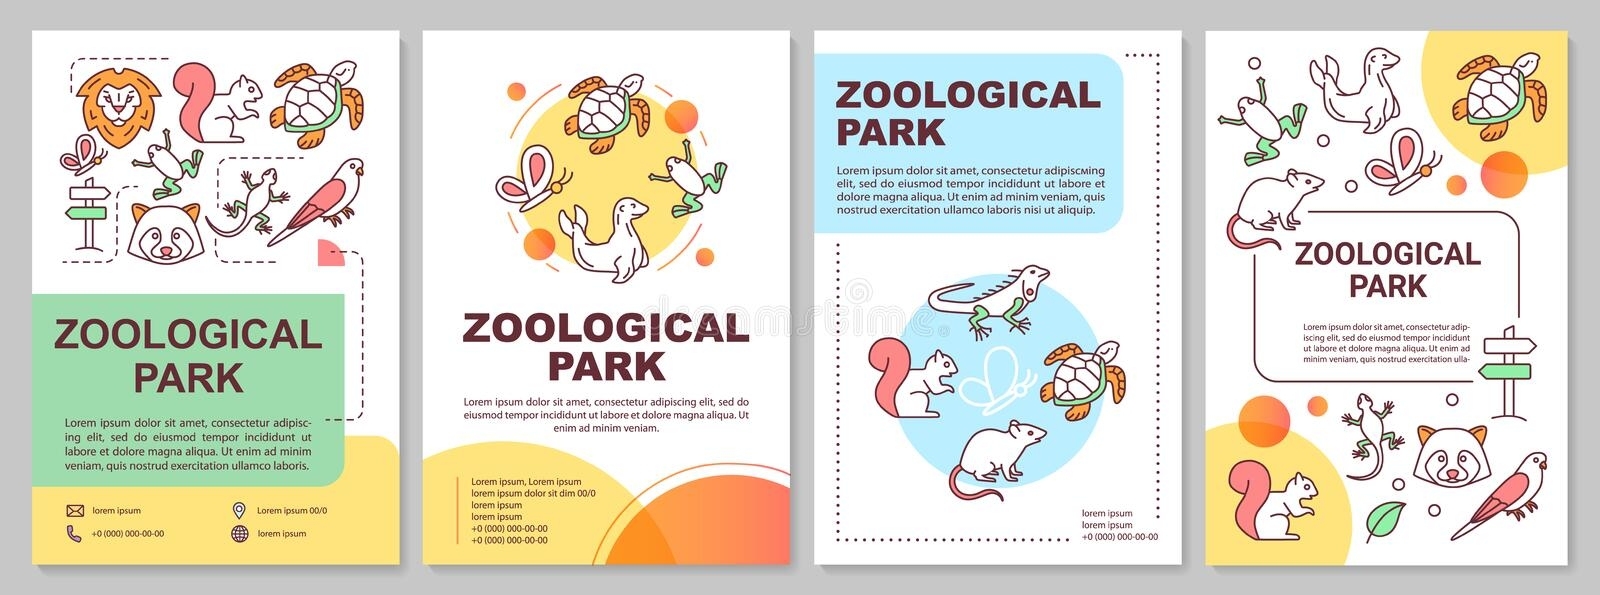 Zoo Brochure Flyer Design Template Stock Illustration - Illustration Of within Zoo Brochure Template